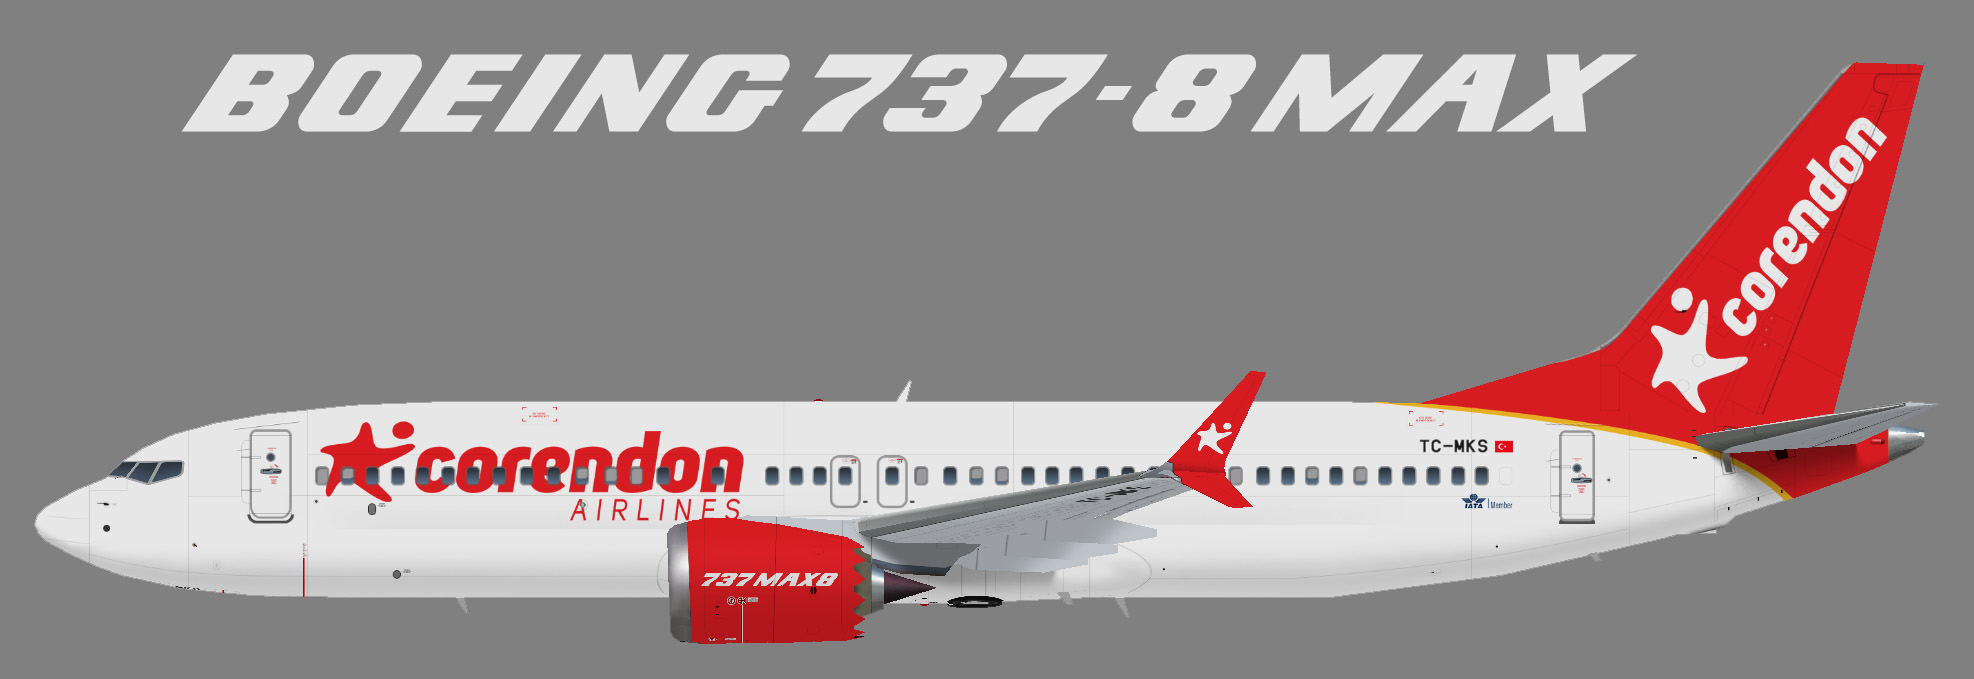 Boeing 737 800 corendon airlines схема салона